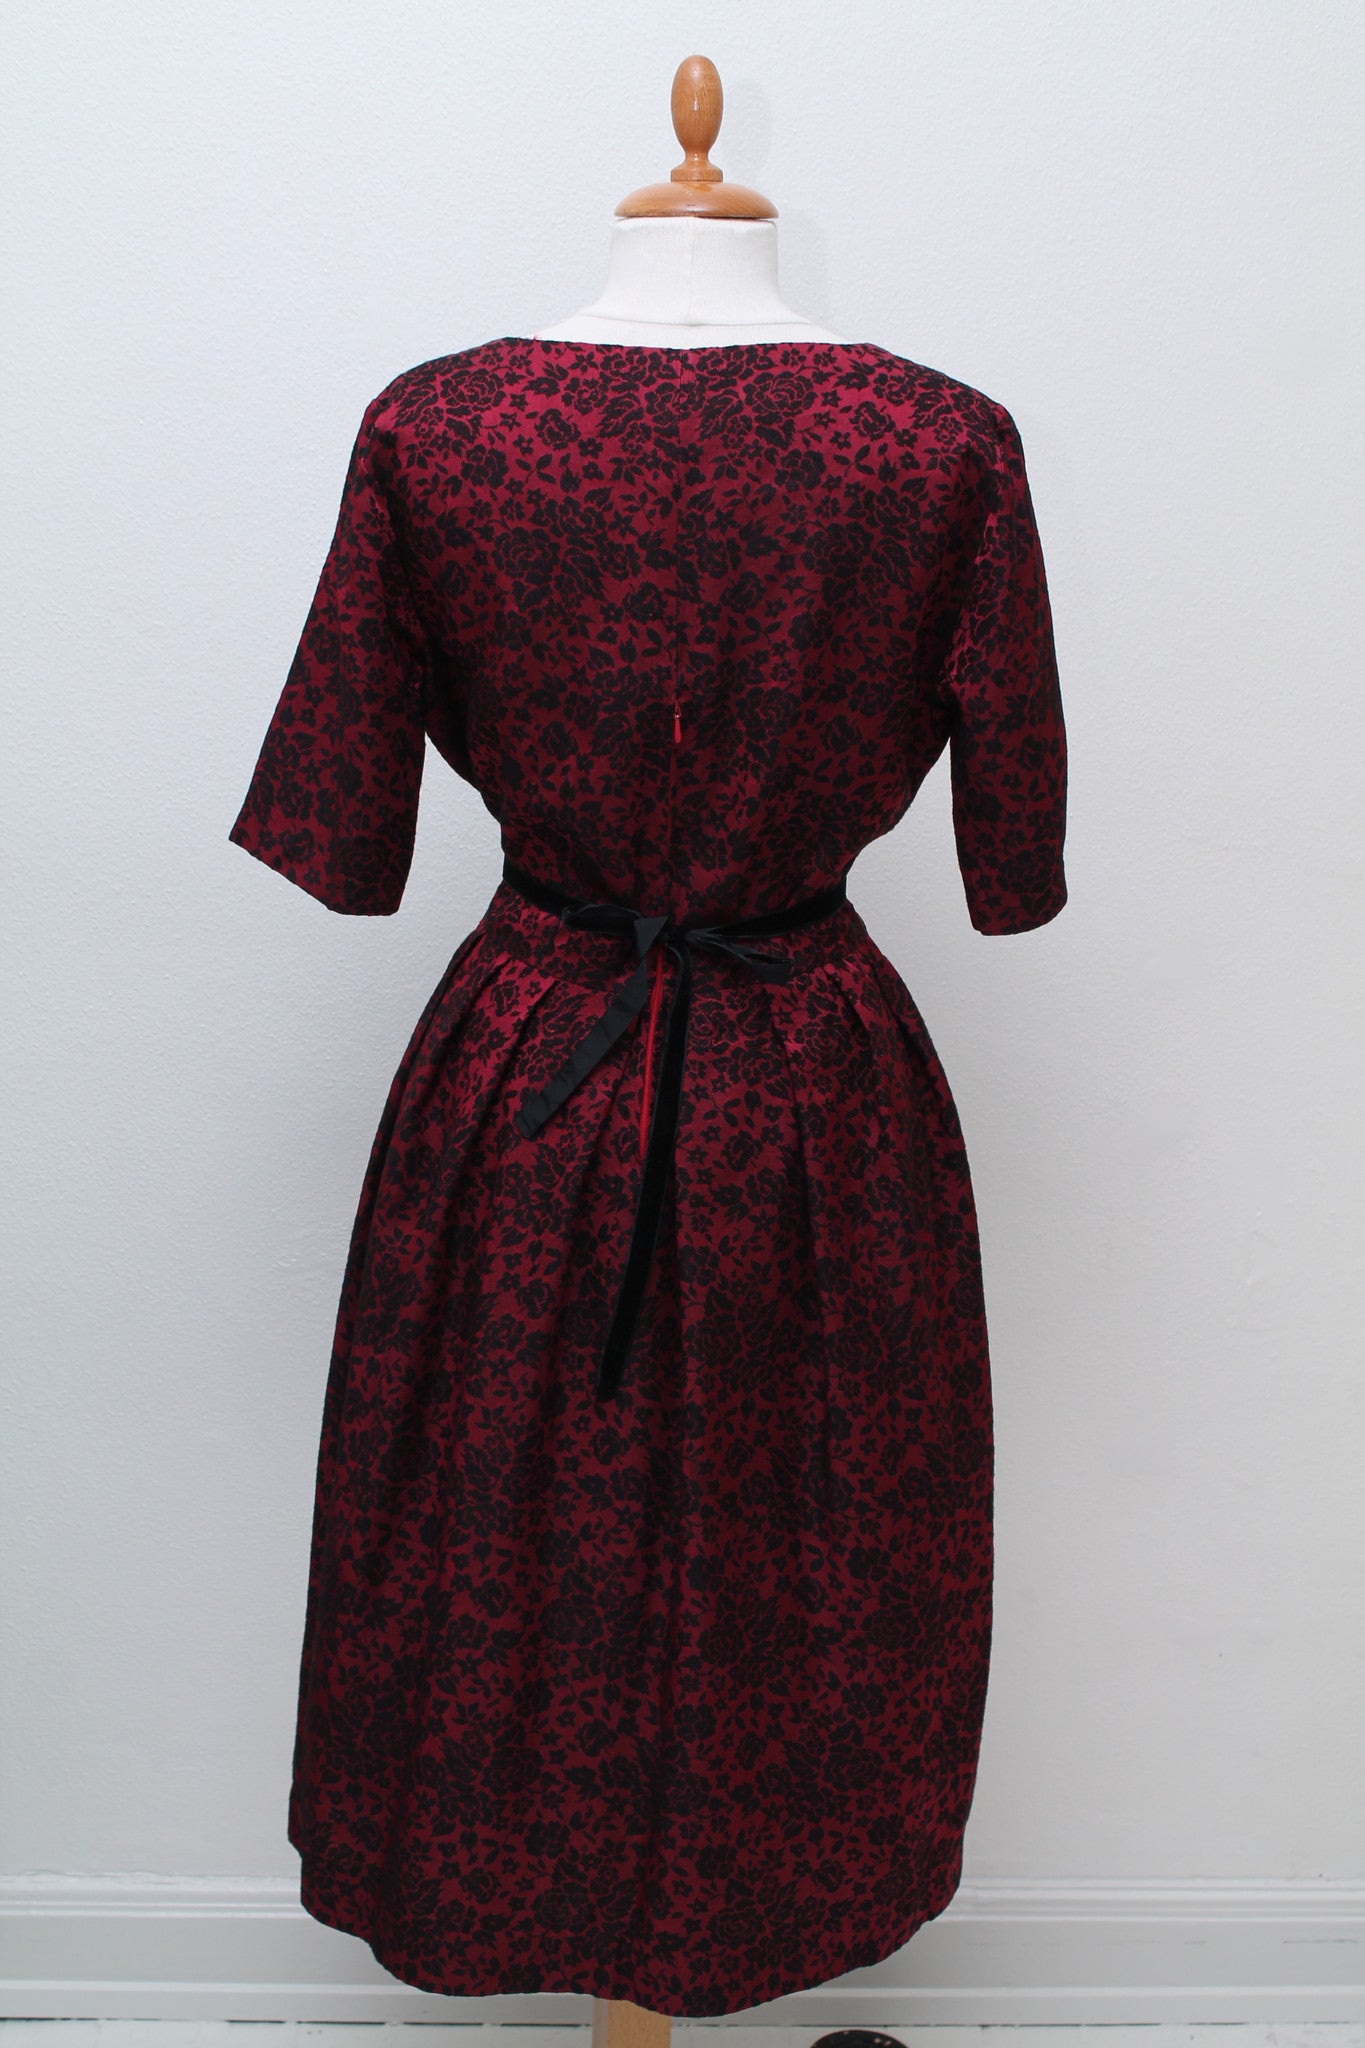 Rød og sortblomstret kjole 1950, L